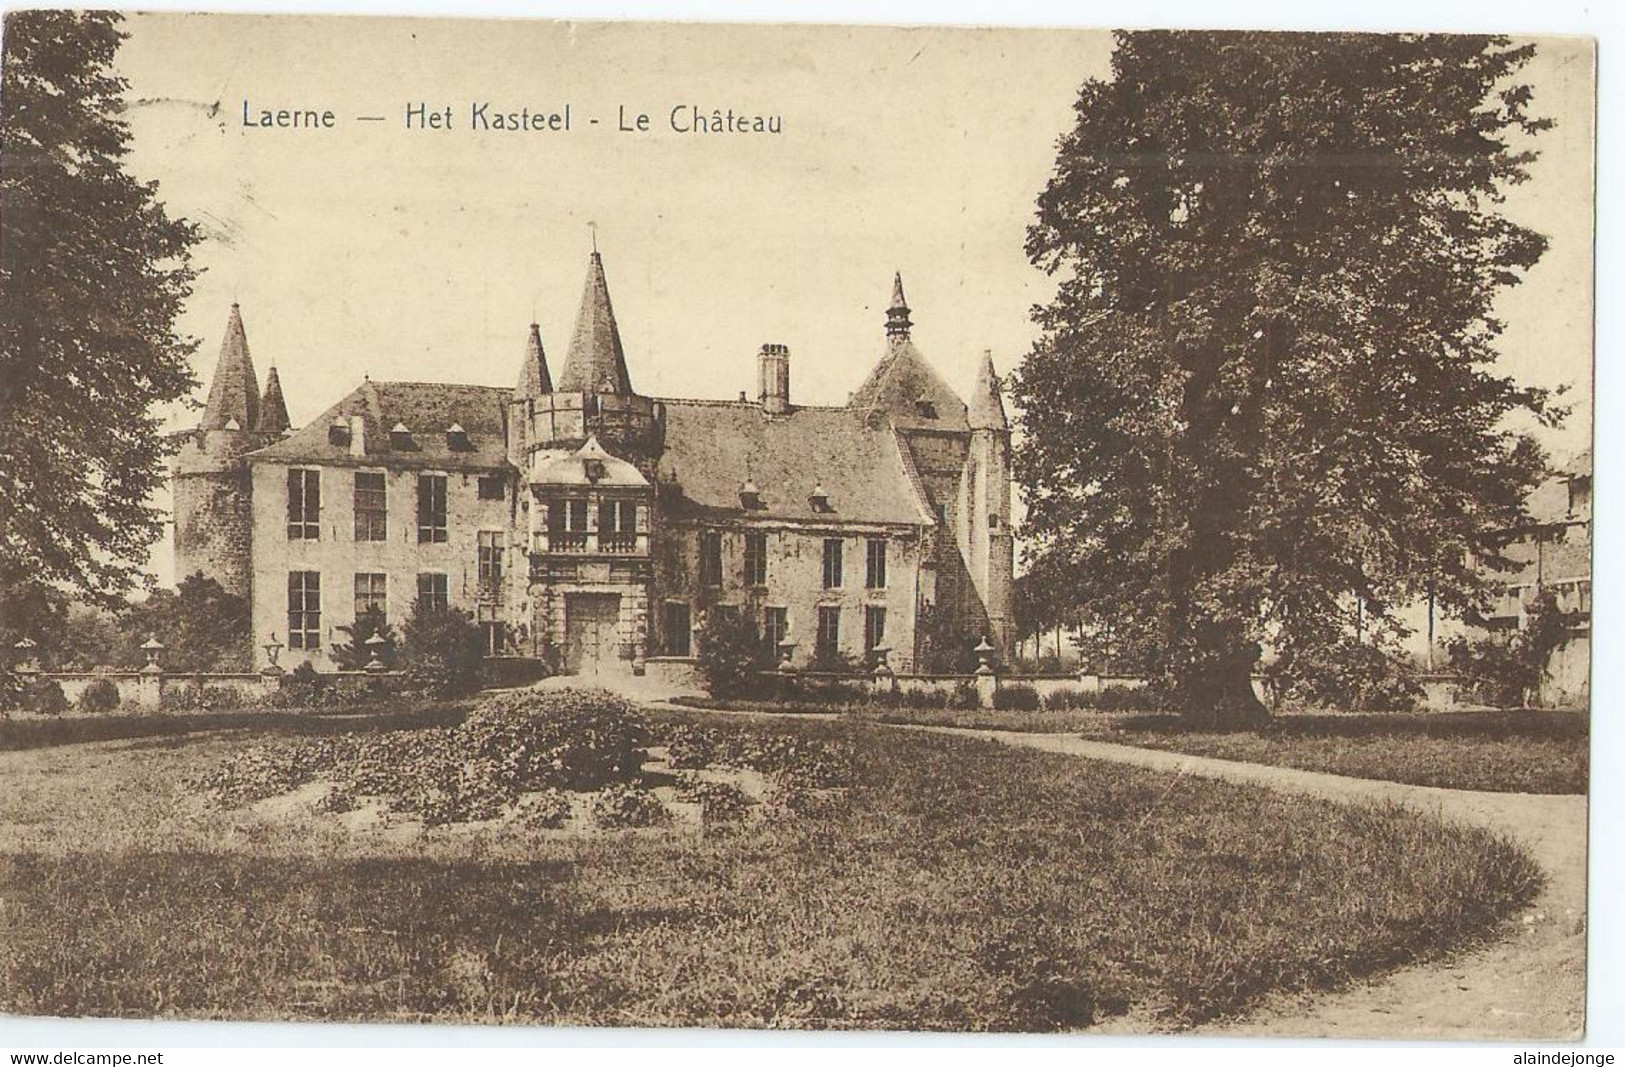 Laarne - Laerne - Het Kasteel - Le Château - Laarne